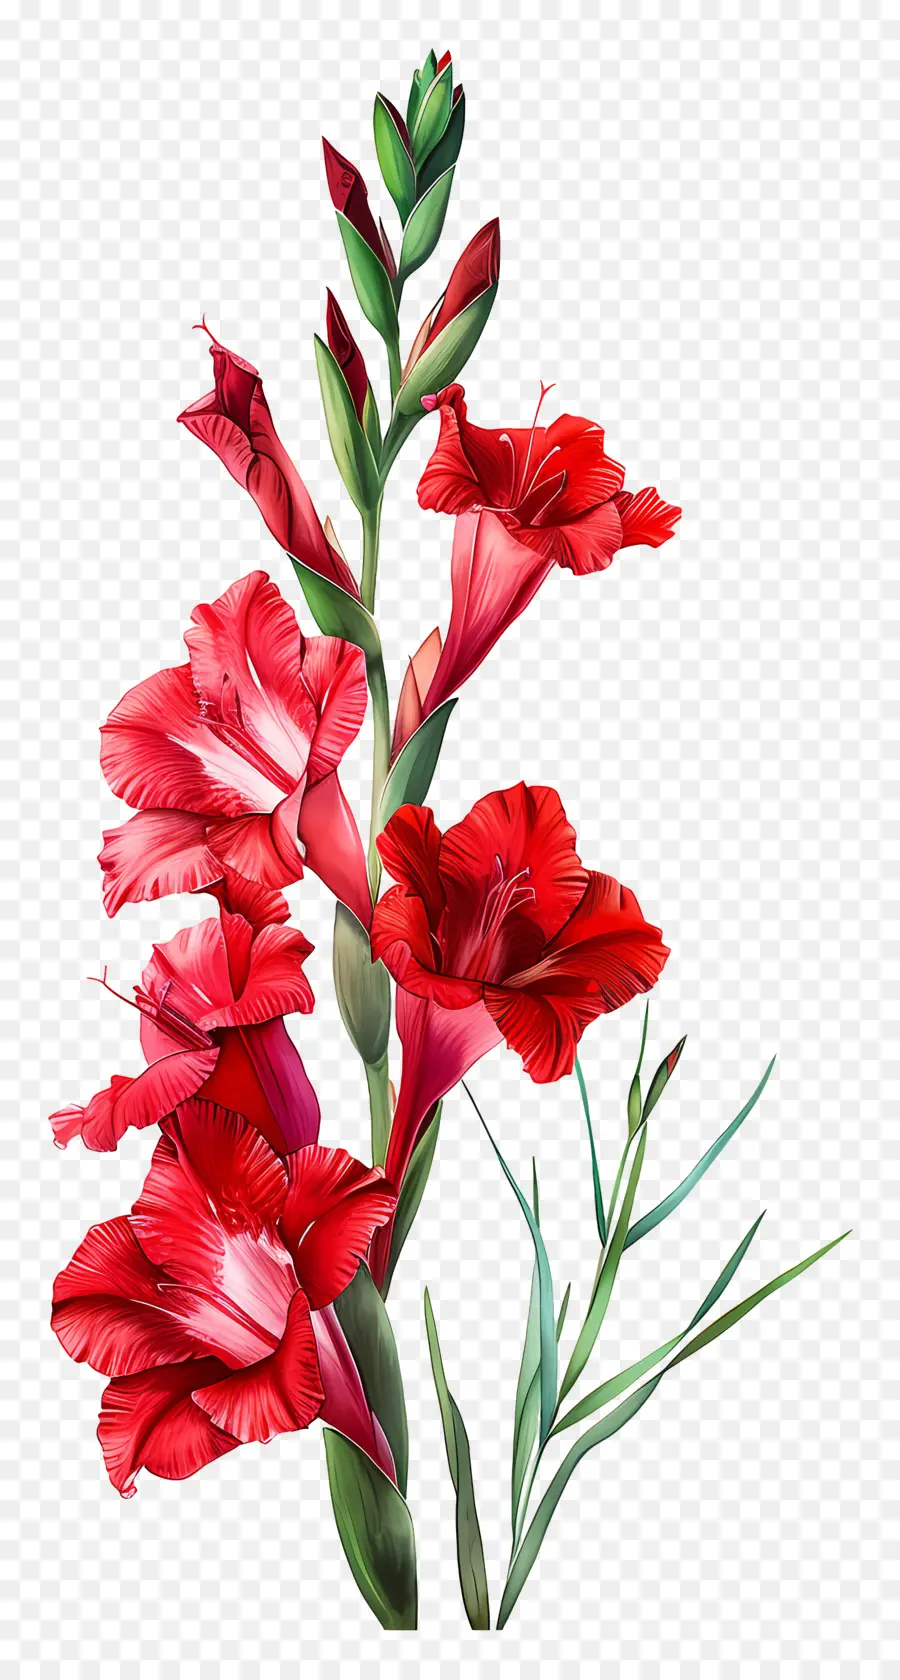 glacioli rossi fiori rossi disposizione simmetrica di colore vivace fioritura - Disposizione simmetrica di fiori rossi vibranti